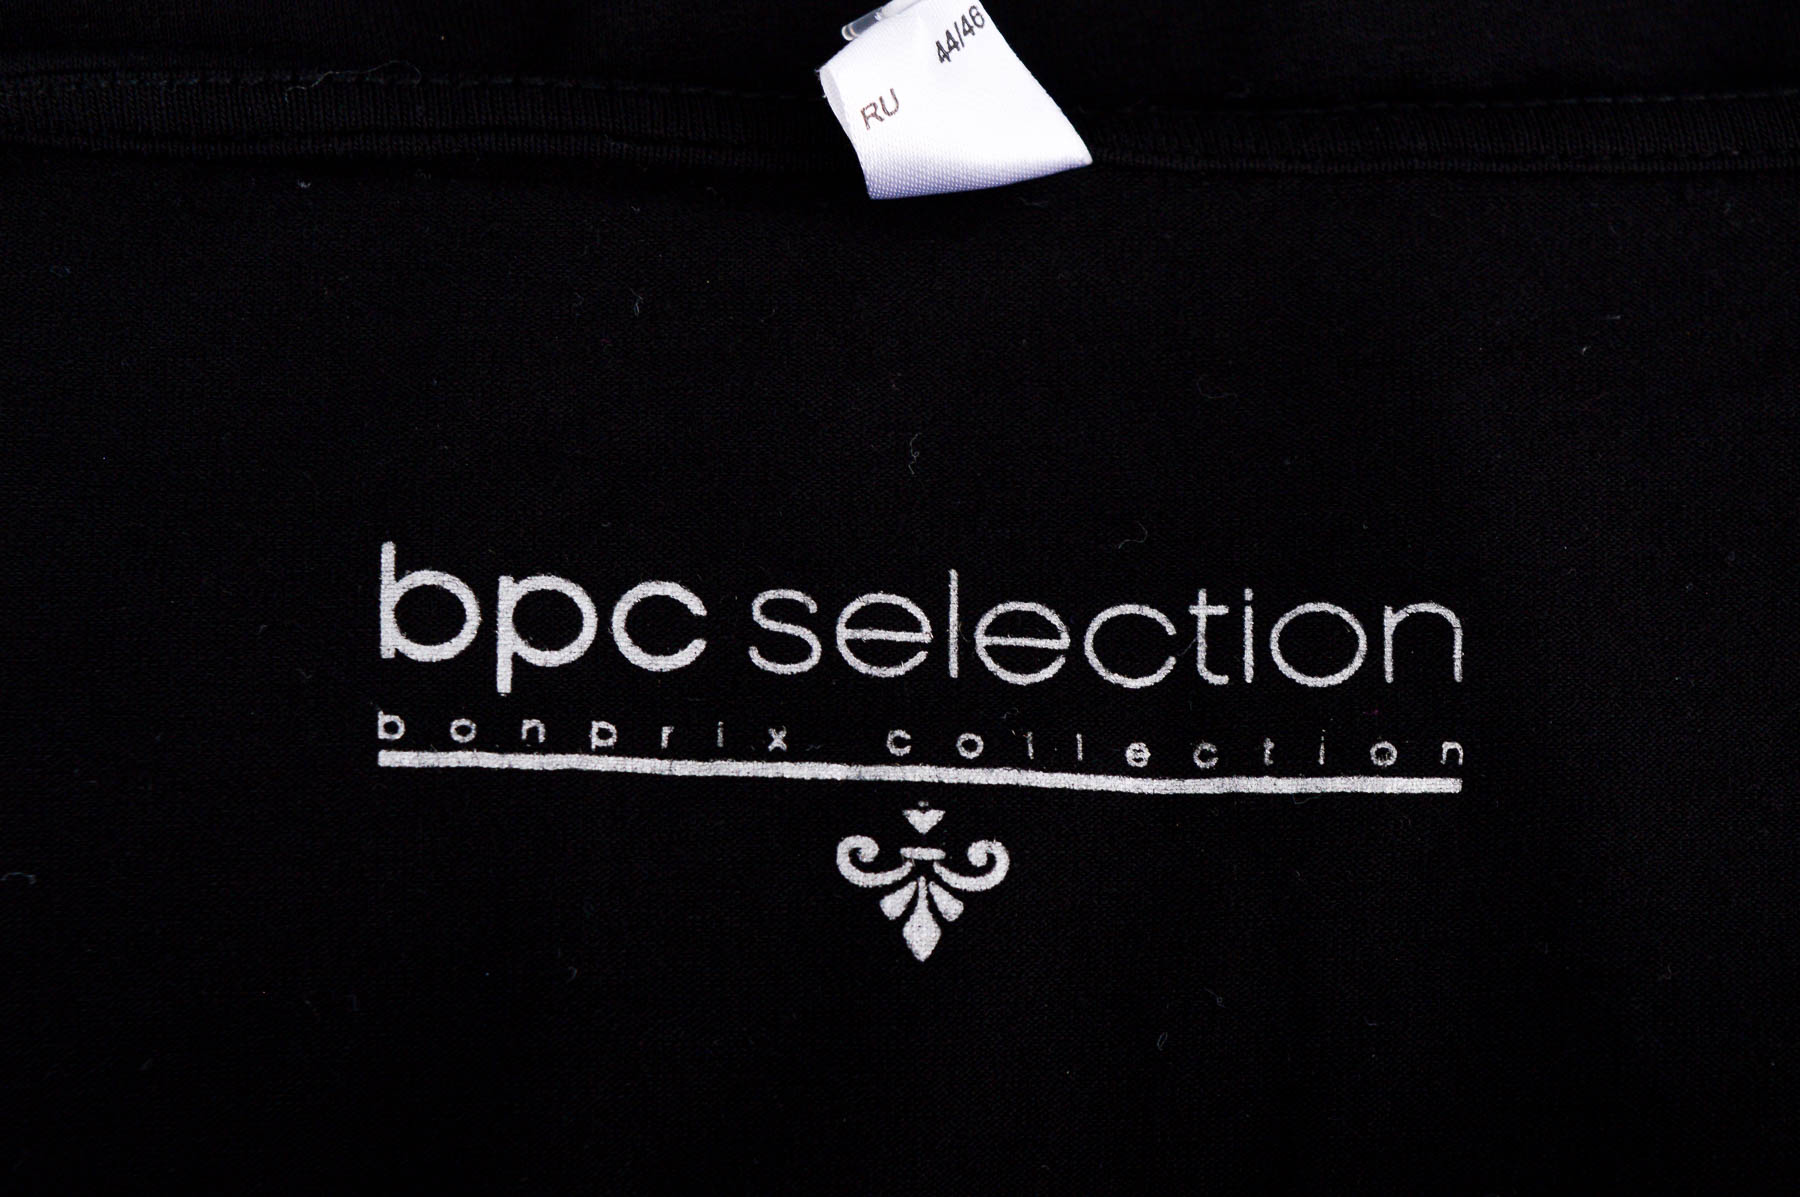 Koszulka damska - Bpc selection bonprix collection - 2